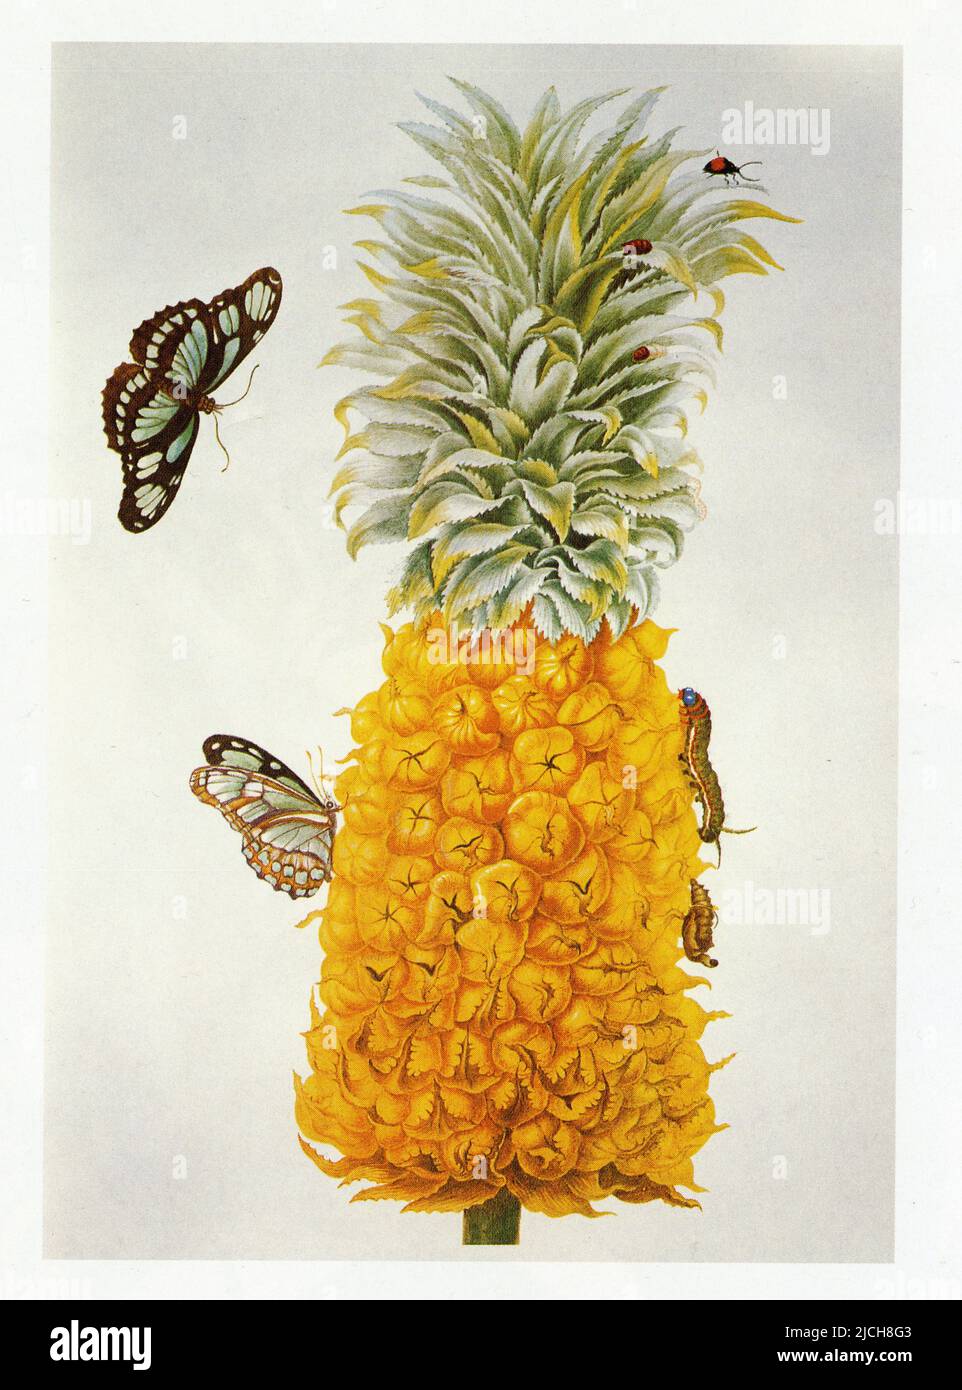 Ananas comosus. La chenille et la chrysalide sur la droite. Le papillon de l'espèce Philaethria dido Foto Stock